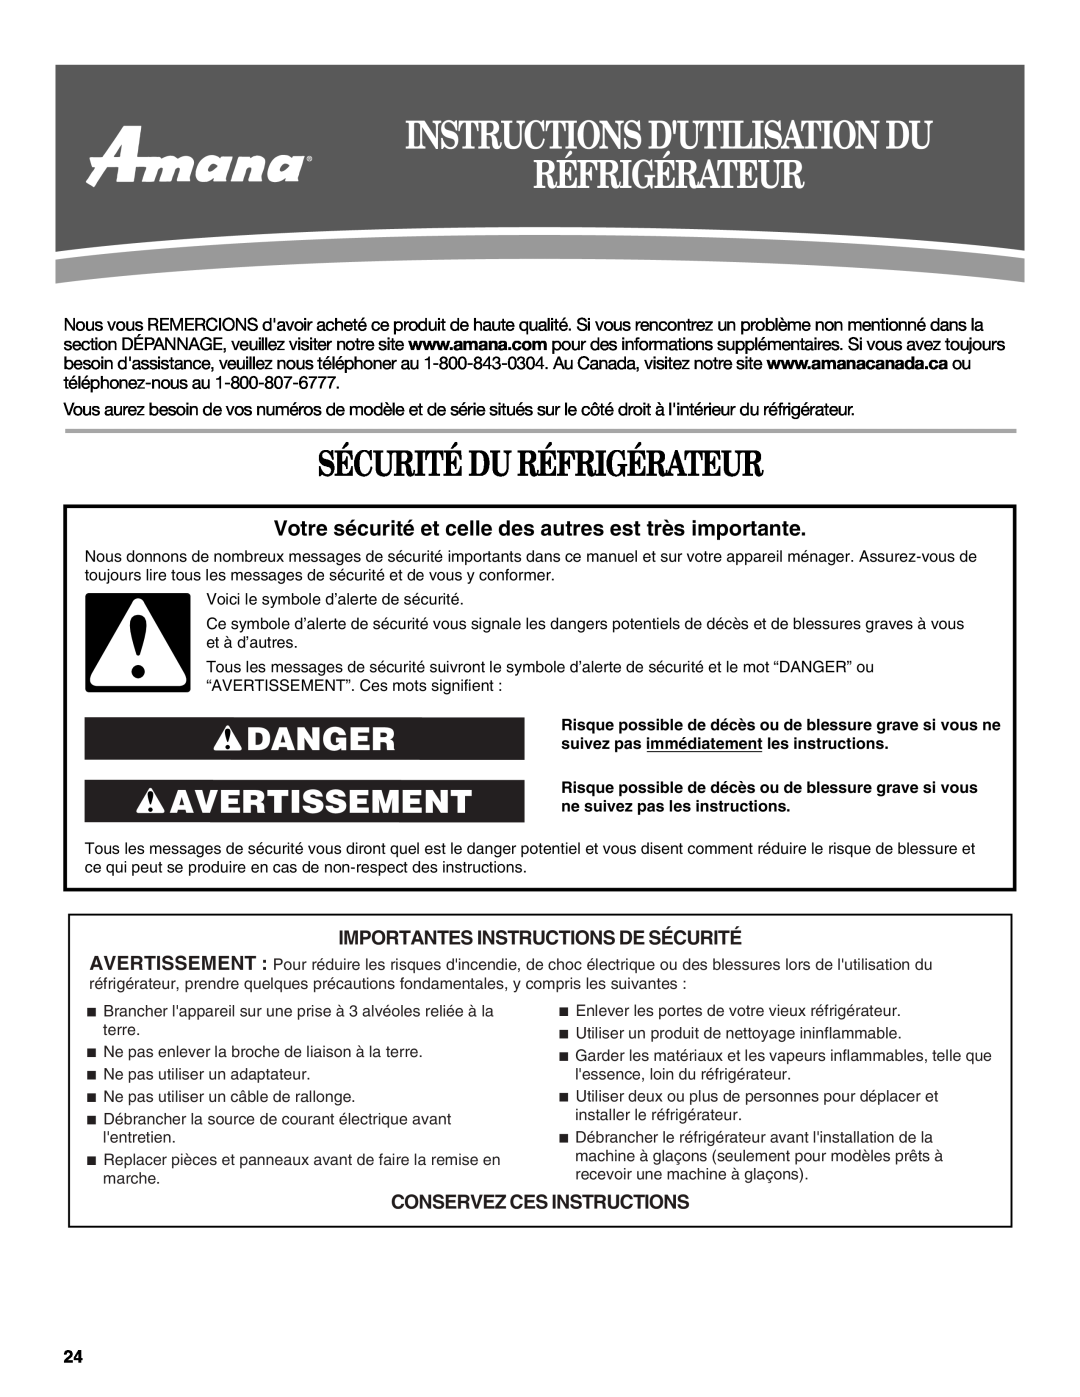 Amana ATB1932MRW Instructions Dutilisation Du Réfrigérateur, Sécurité Du Réfrigérateur, Danger Avertissement 